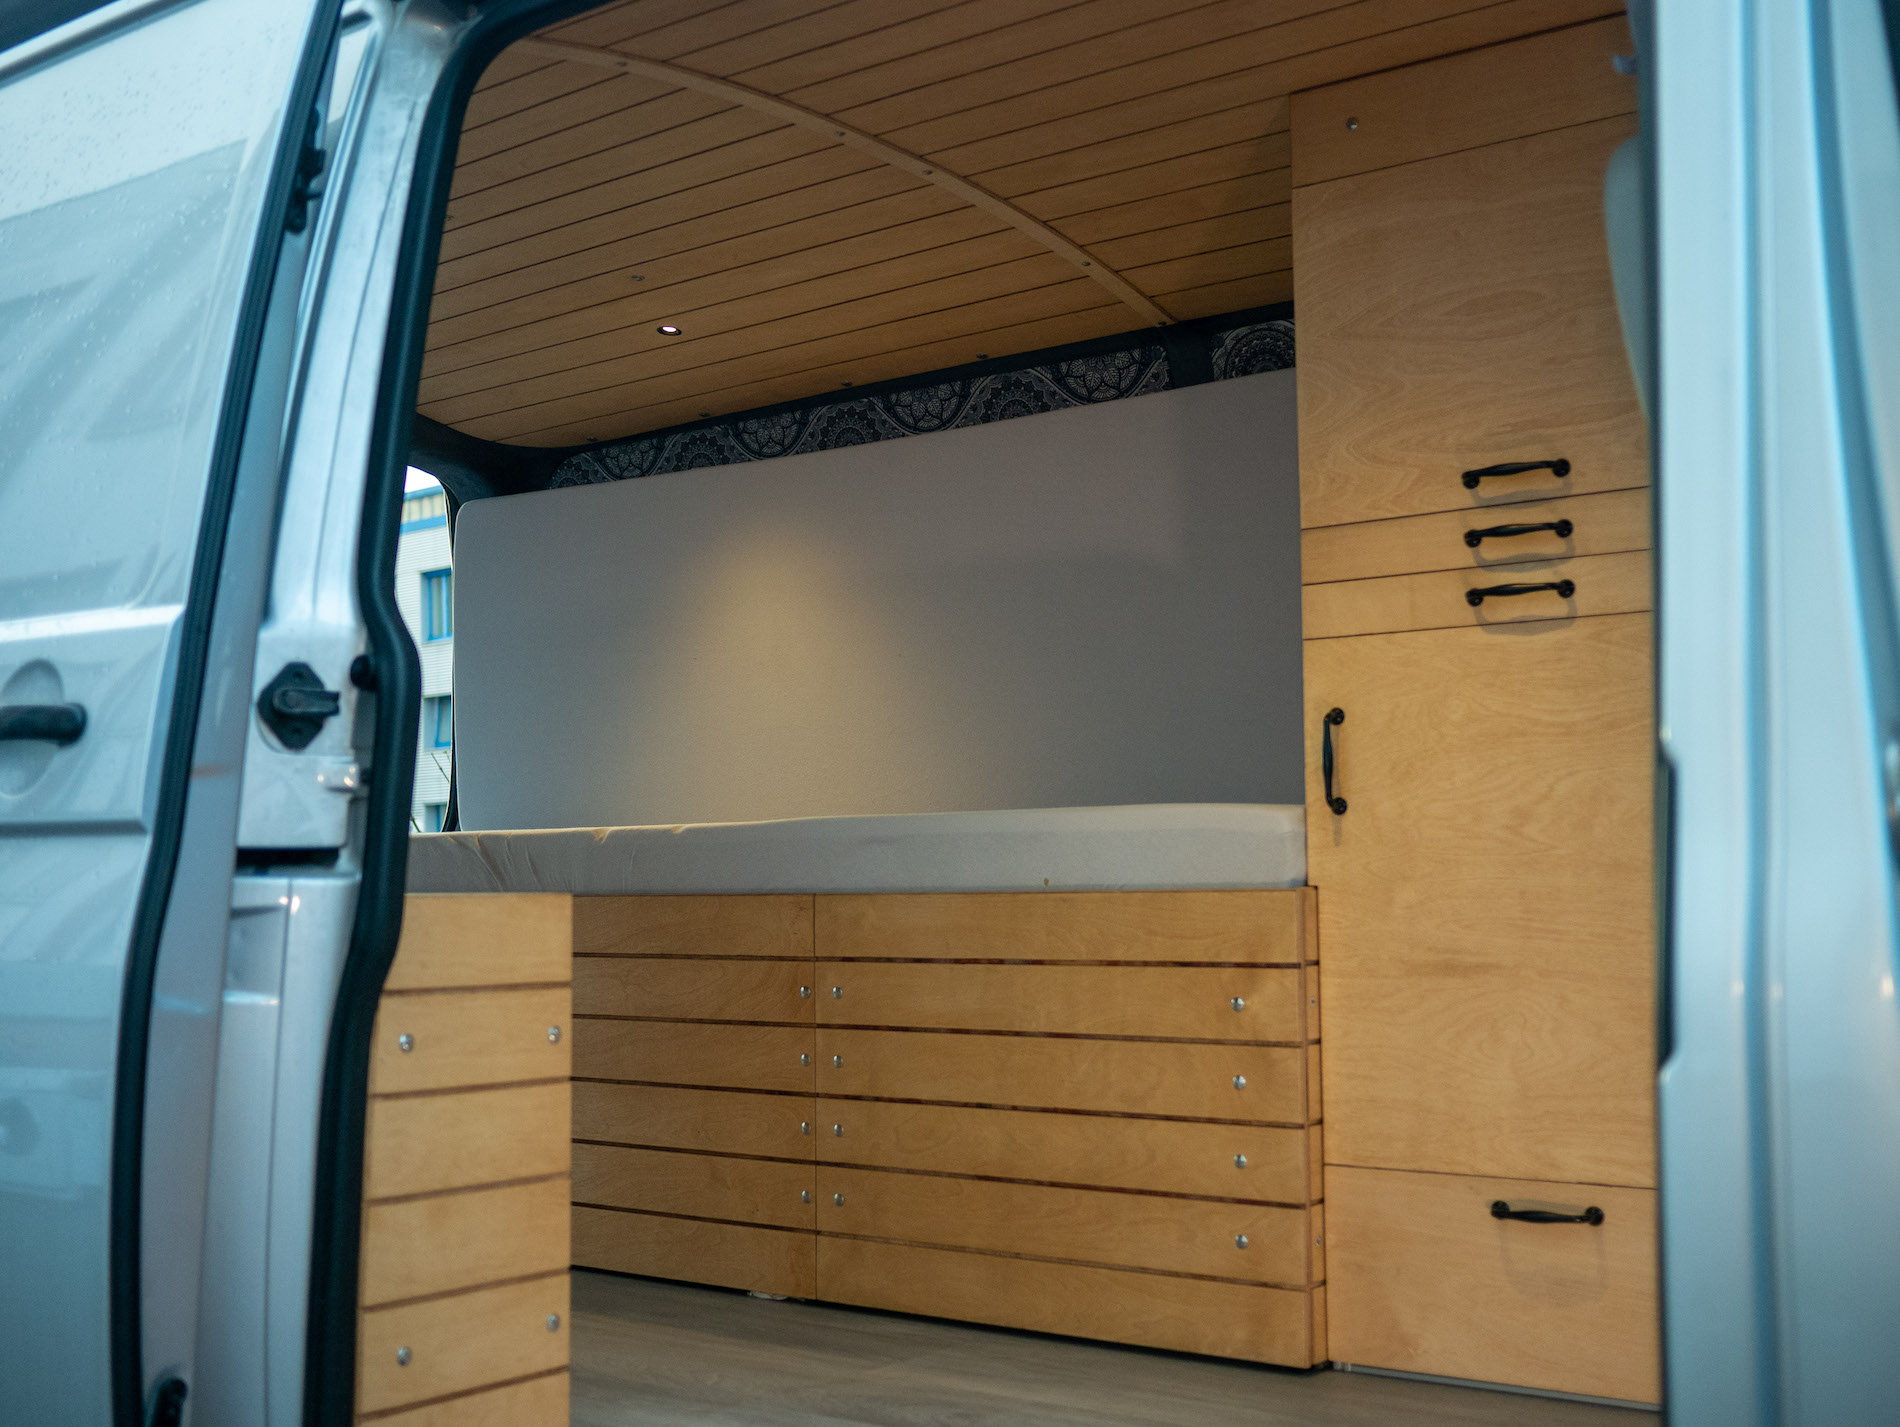 Auto T5 Transporter Bett Schrank Holz Verkleidung verstauen Regal